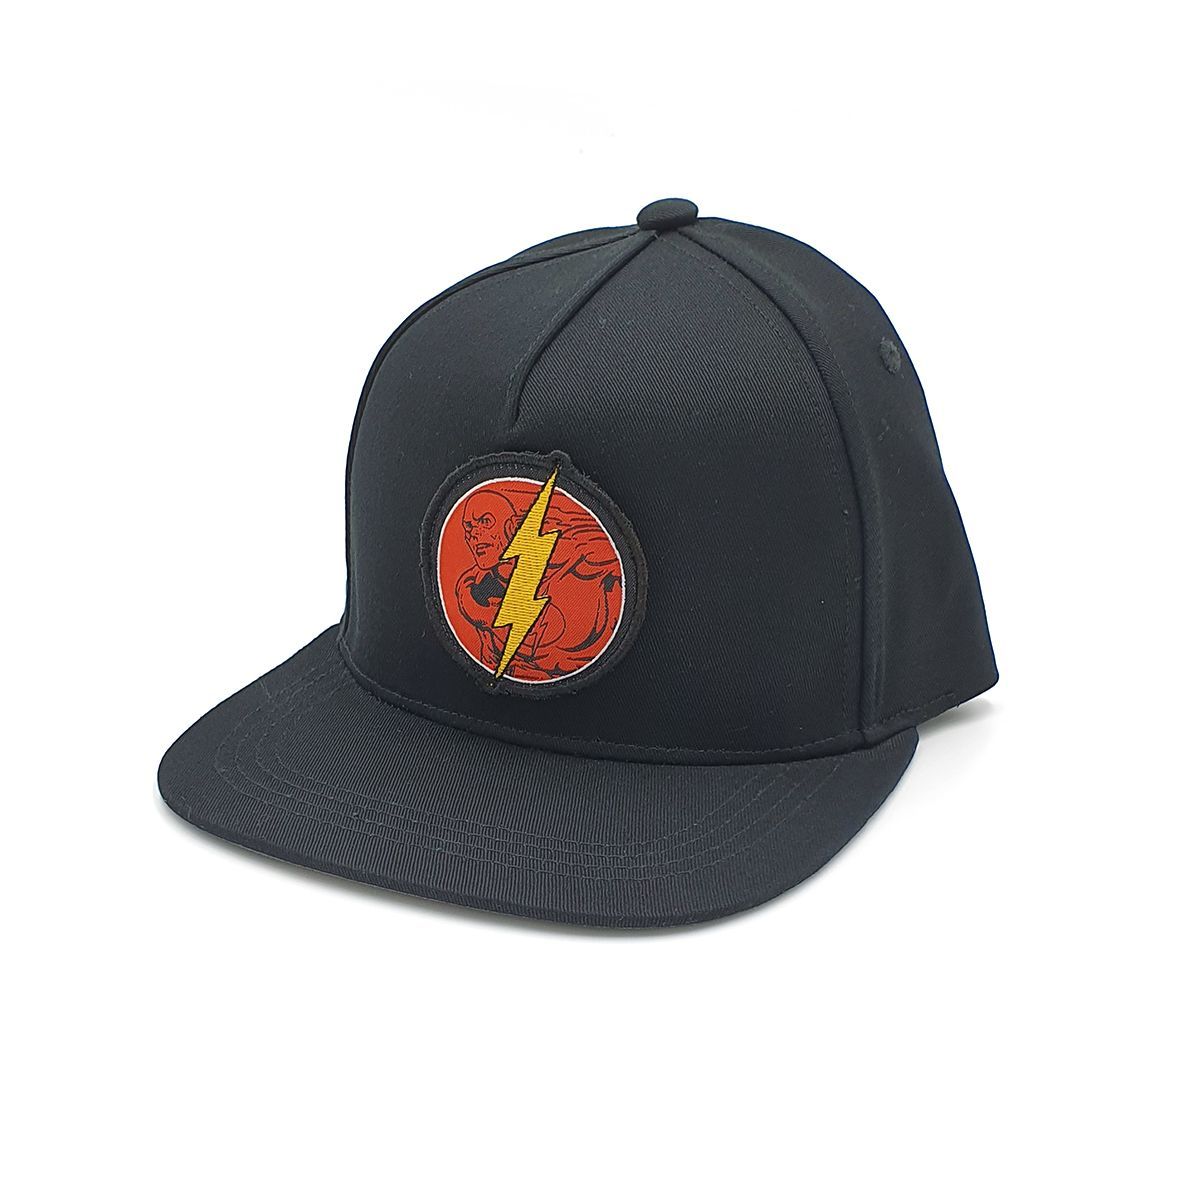 قبعة بلون أسود ببادج من شخصيات أفلام دي سي كوميكس من فابريك فلافورز